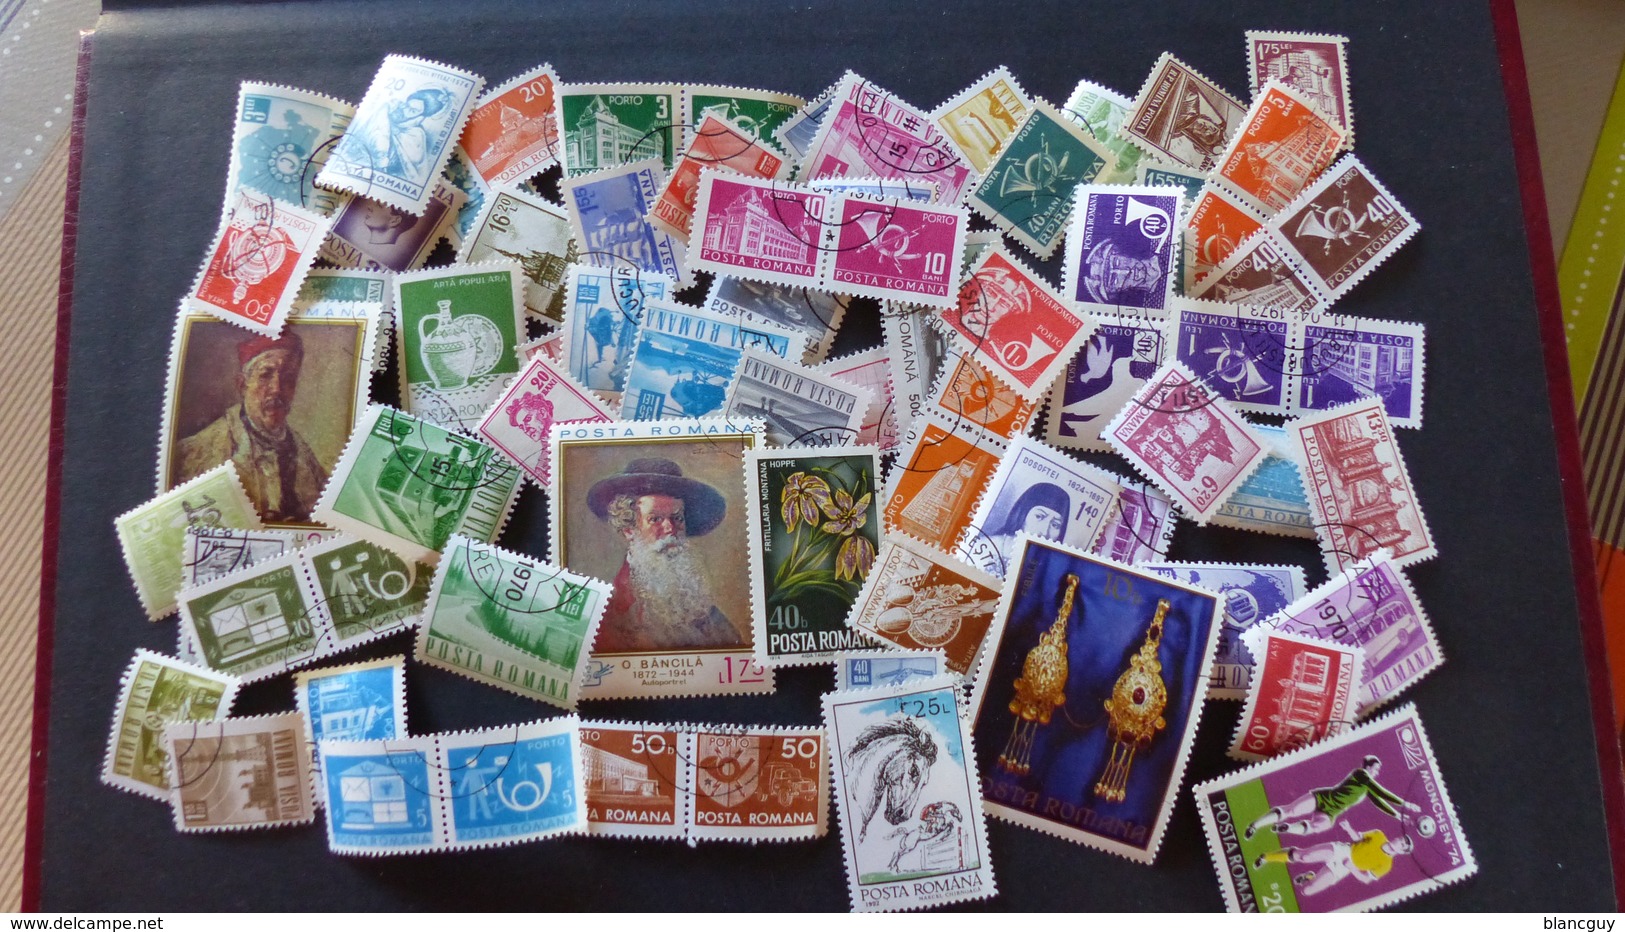 VRAC EUROPE - 1800 timbres d'Europe oblitérés, quelques neufs, tous différents